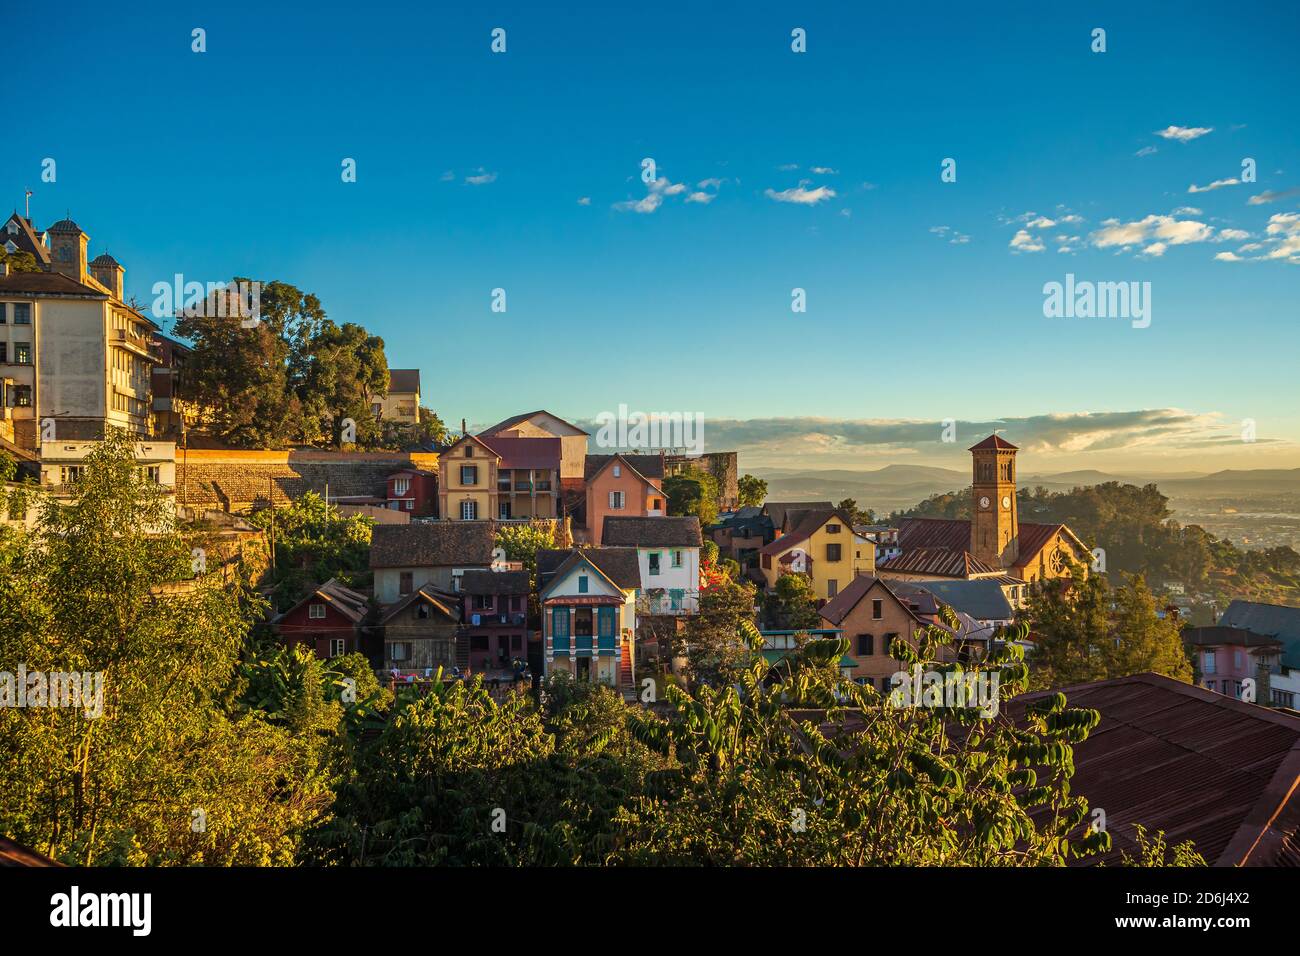 City of Antananarivo near royal palace, Madagascar Stock Photo